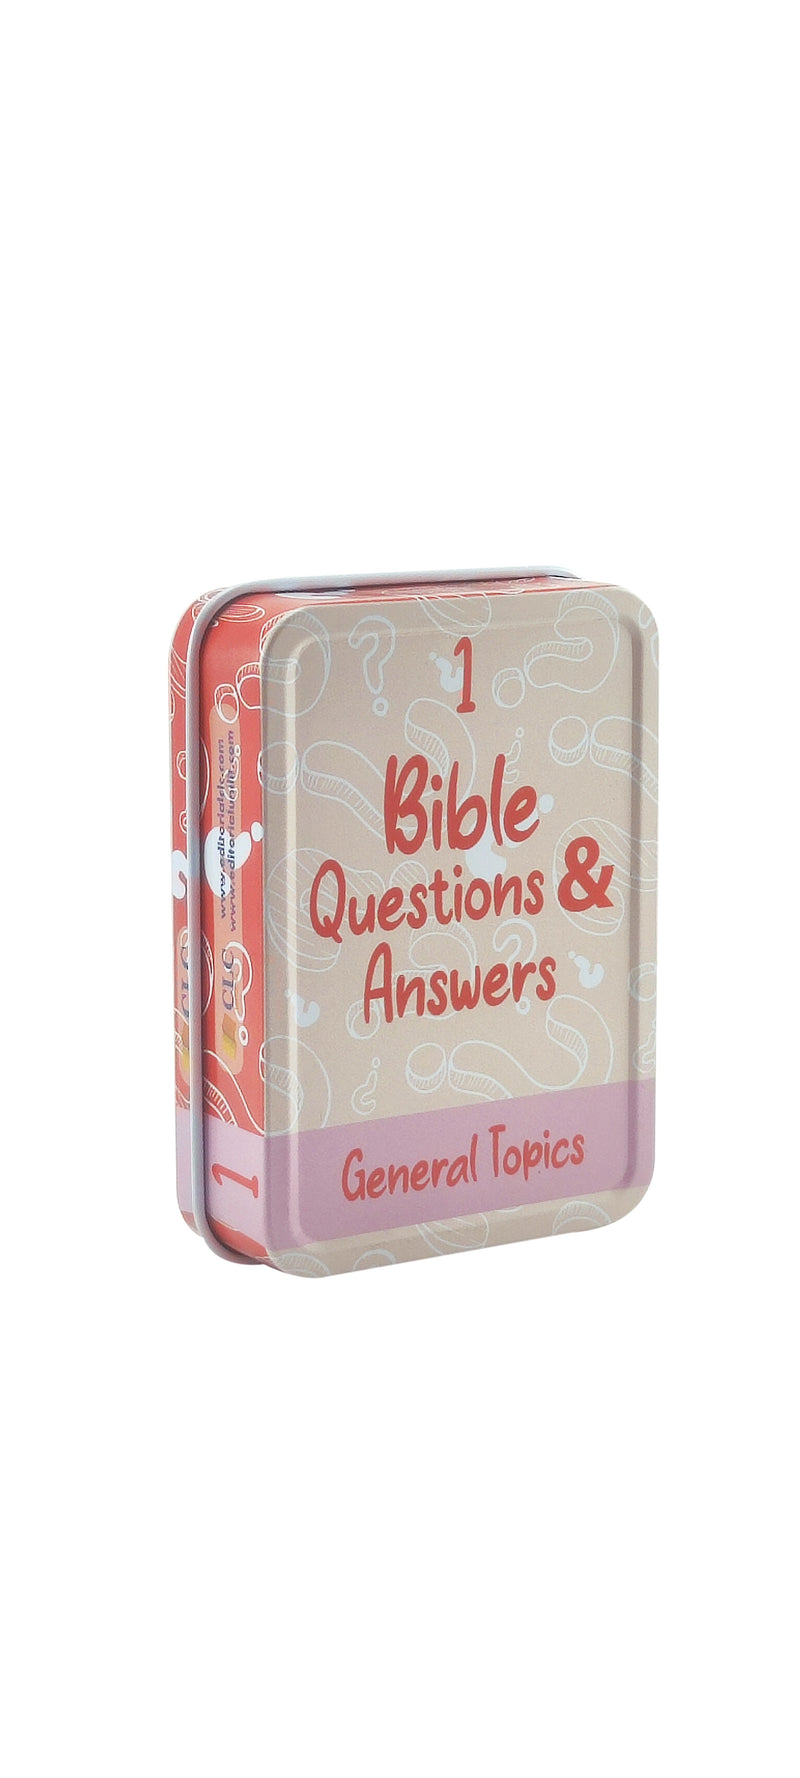 Caja de Metal: Preguntas y Respuestas No. 1 bible questions  & answers temas generales